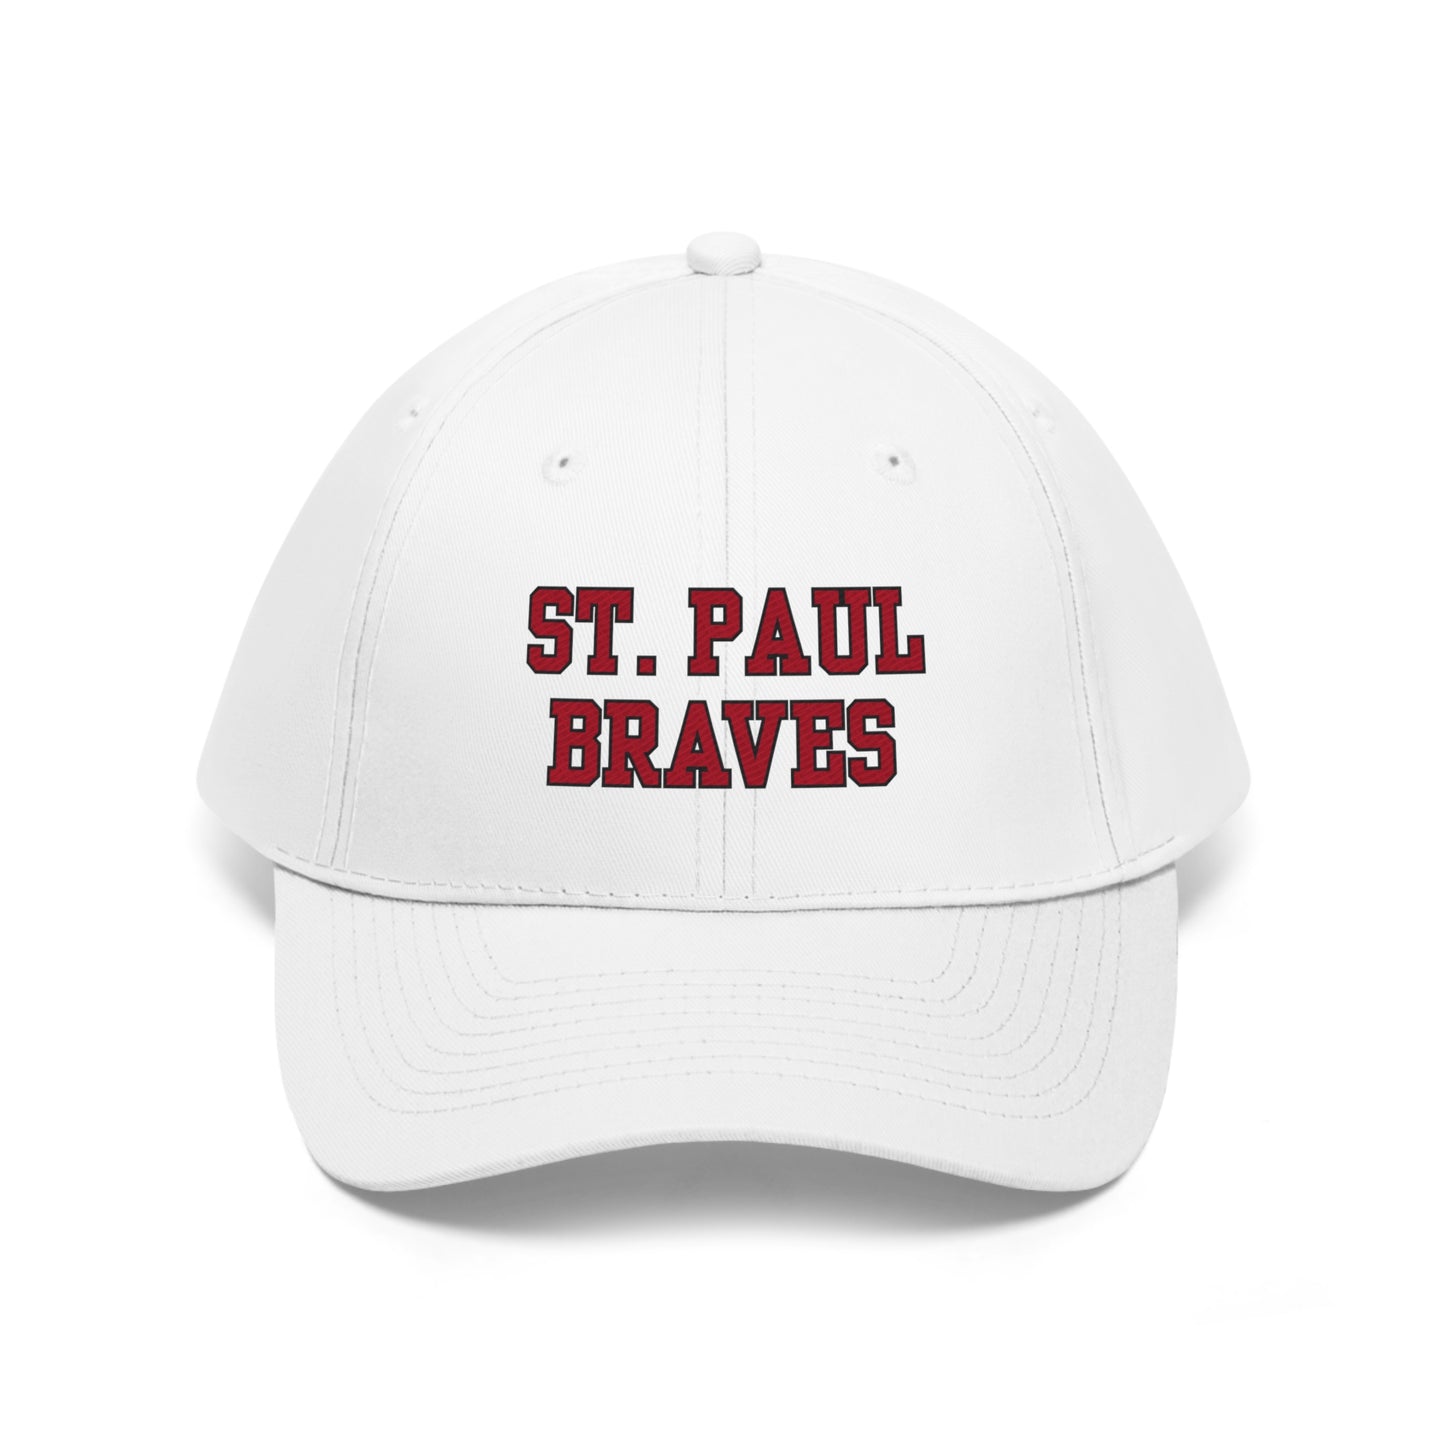 "ST PAUL BRAVES" caps | Unisex Twill Hat | 5 Colors